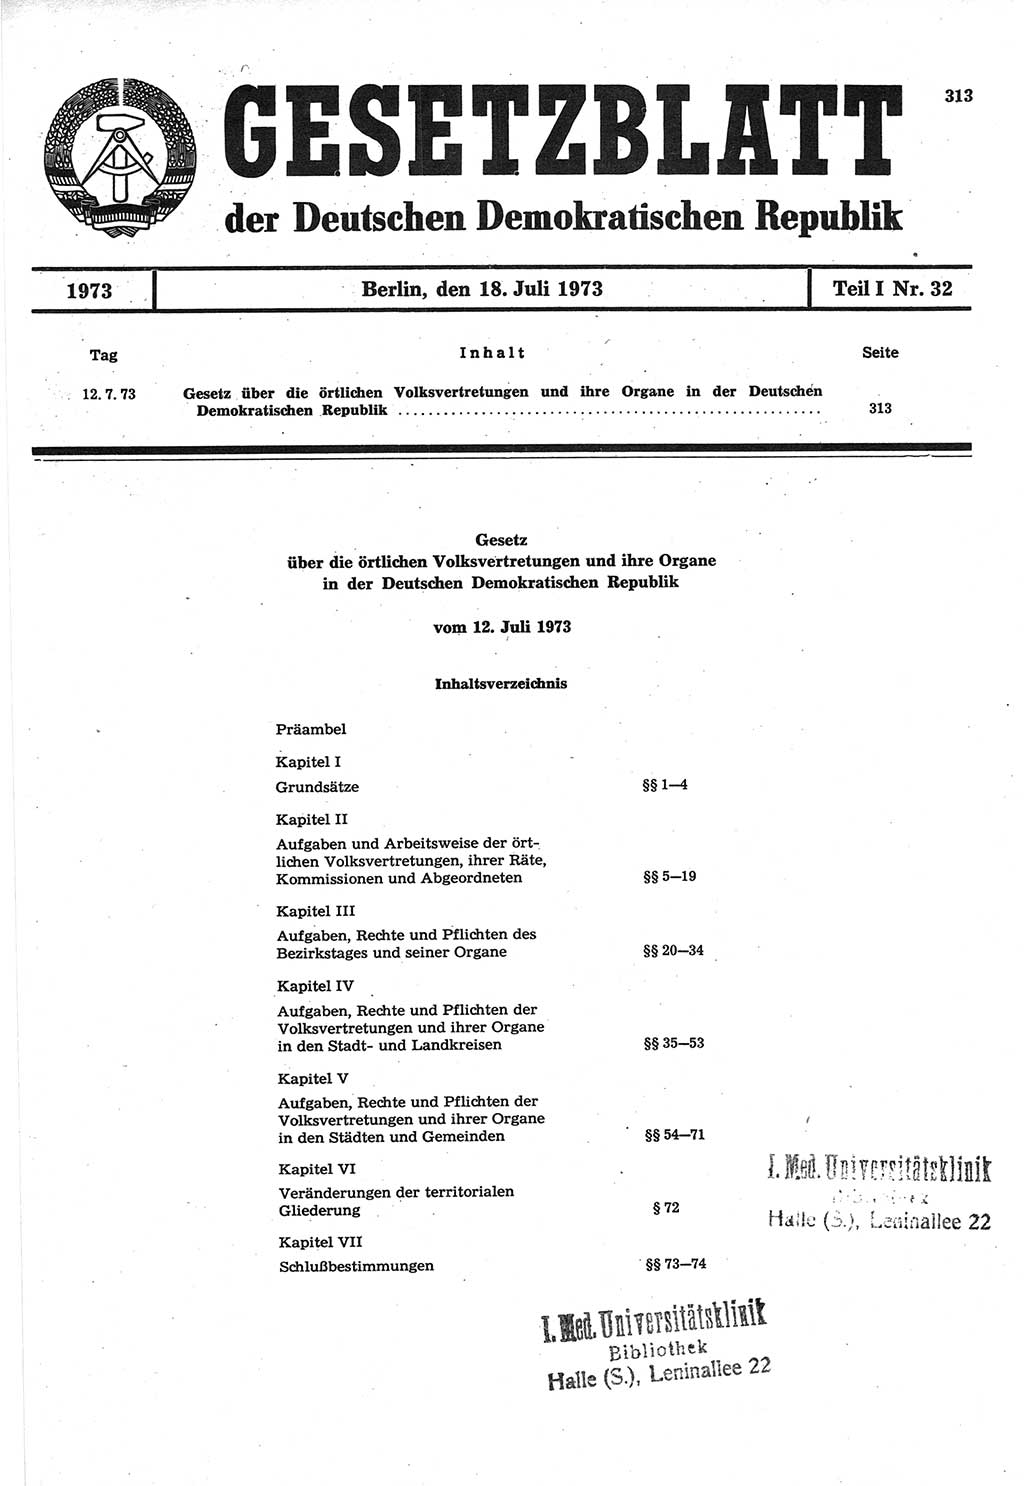 Gesetzblatt (GBl.) der Deutschen Demokratischen Republik (DDR) Teil Ⅰ 1973, Seite 313 (GBl. DDR Ⅰ 1973, S. 313)